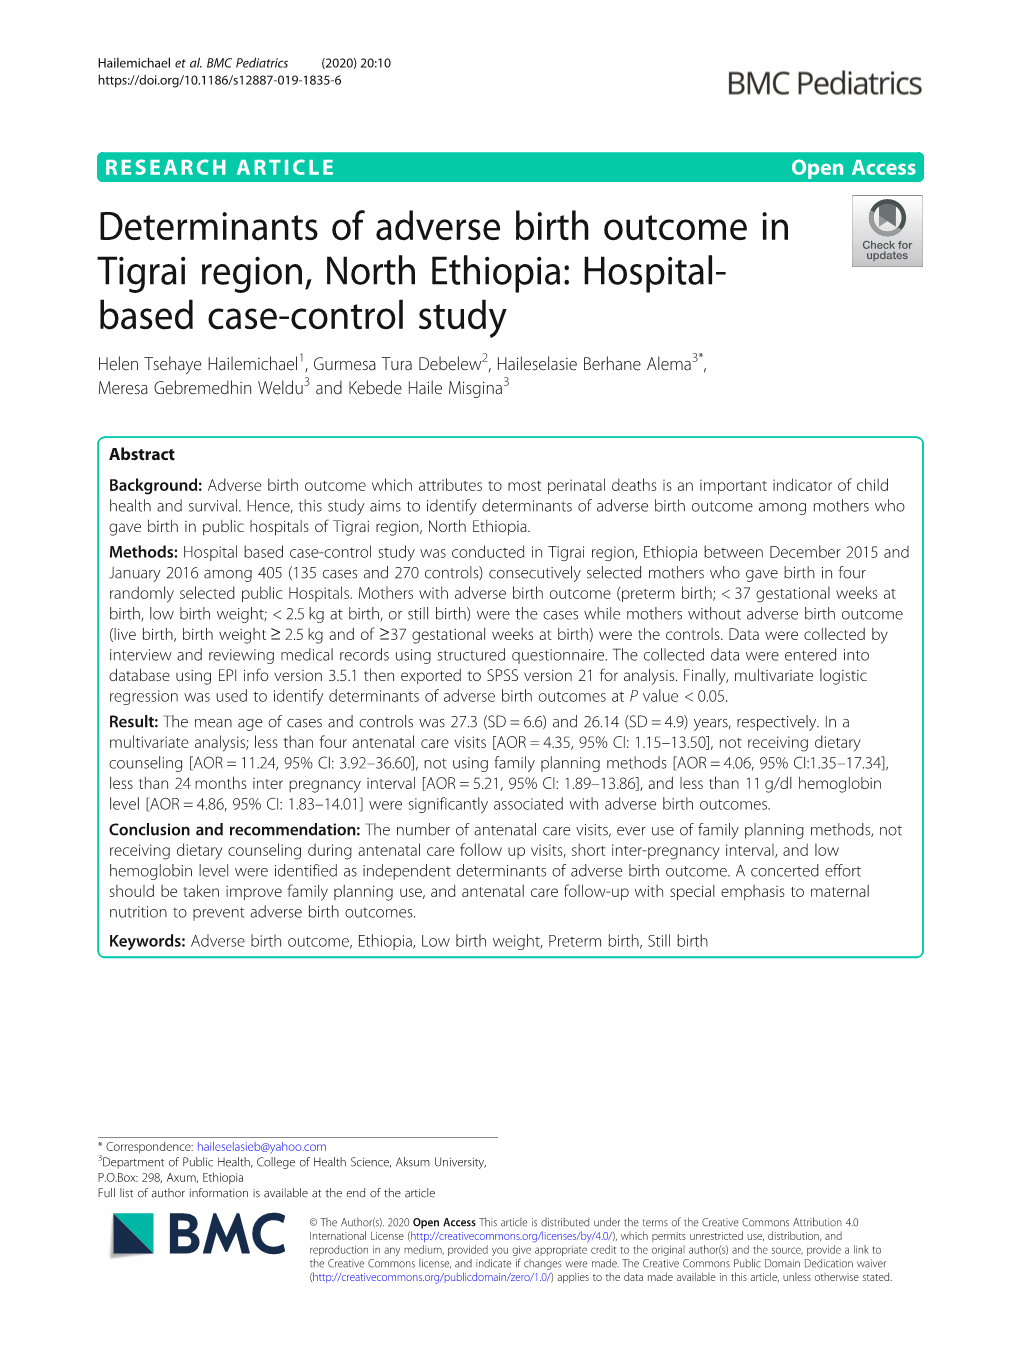 Determinants of Adverse Birth Outcome in Tigrai Region, North